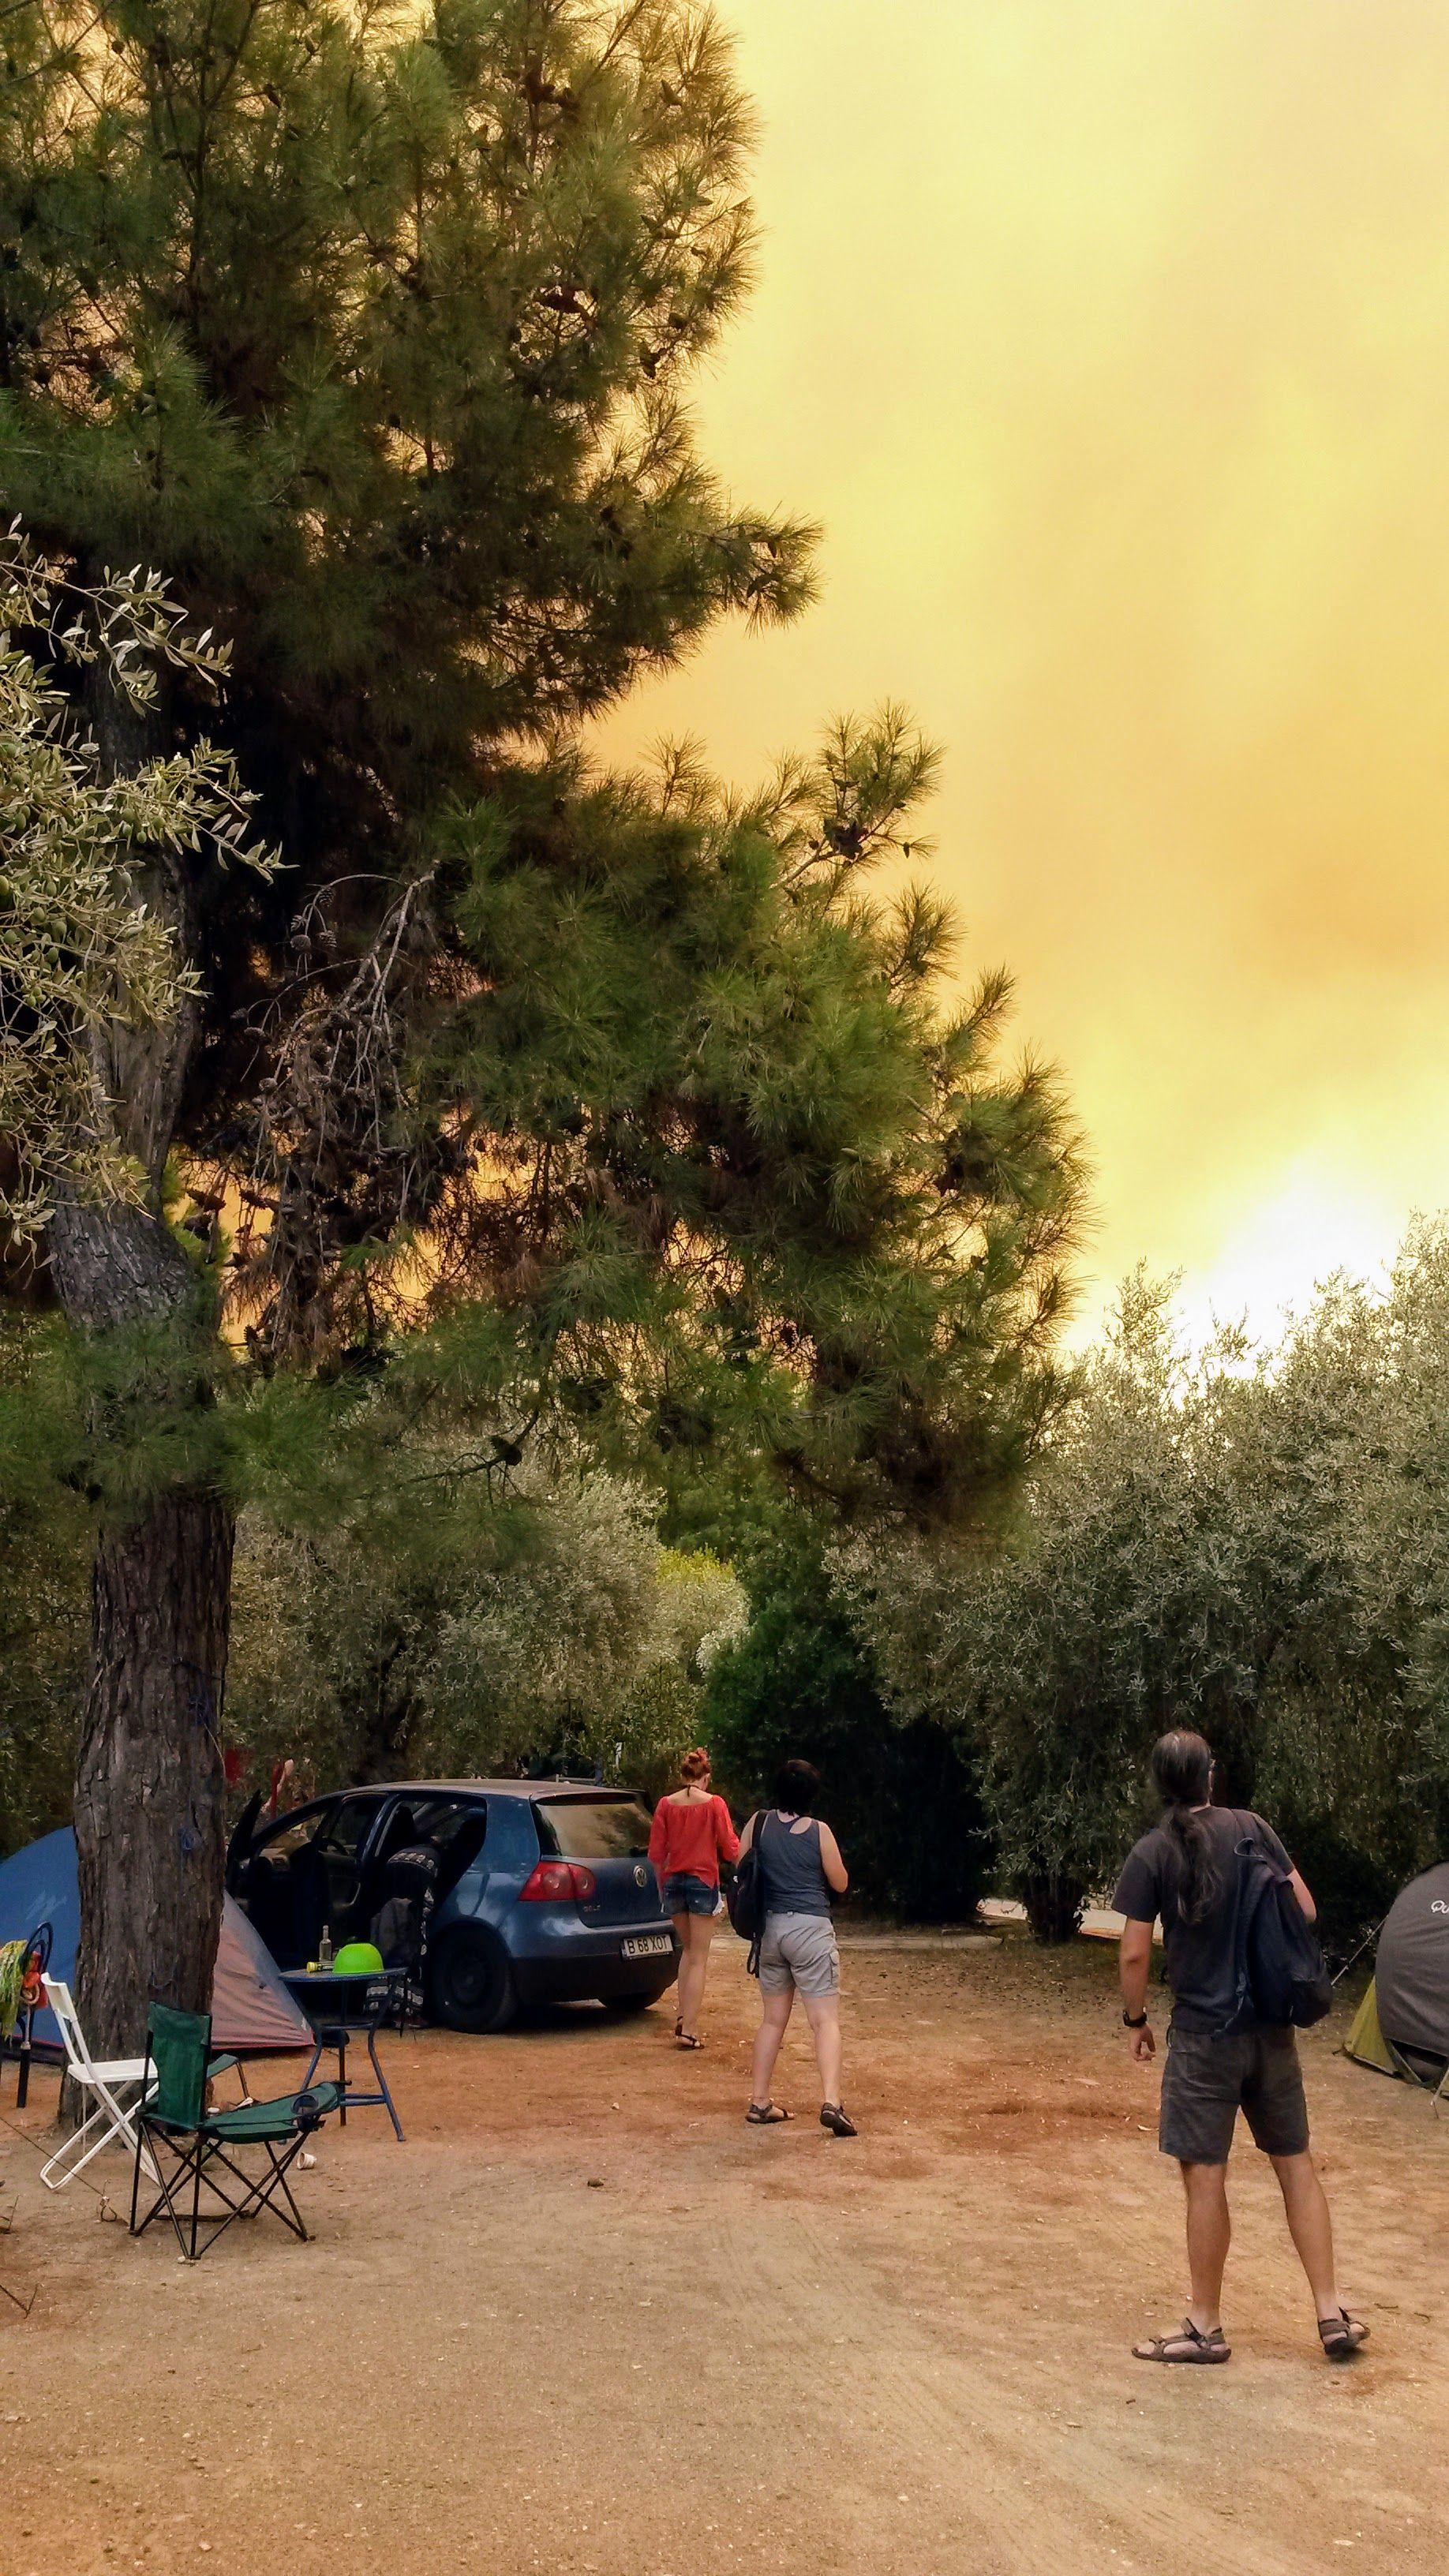 Thasos în flăcări. Focul a început pe 10 septembrie 2016